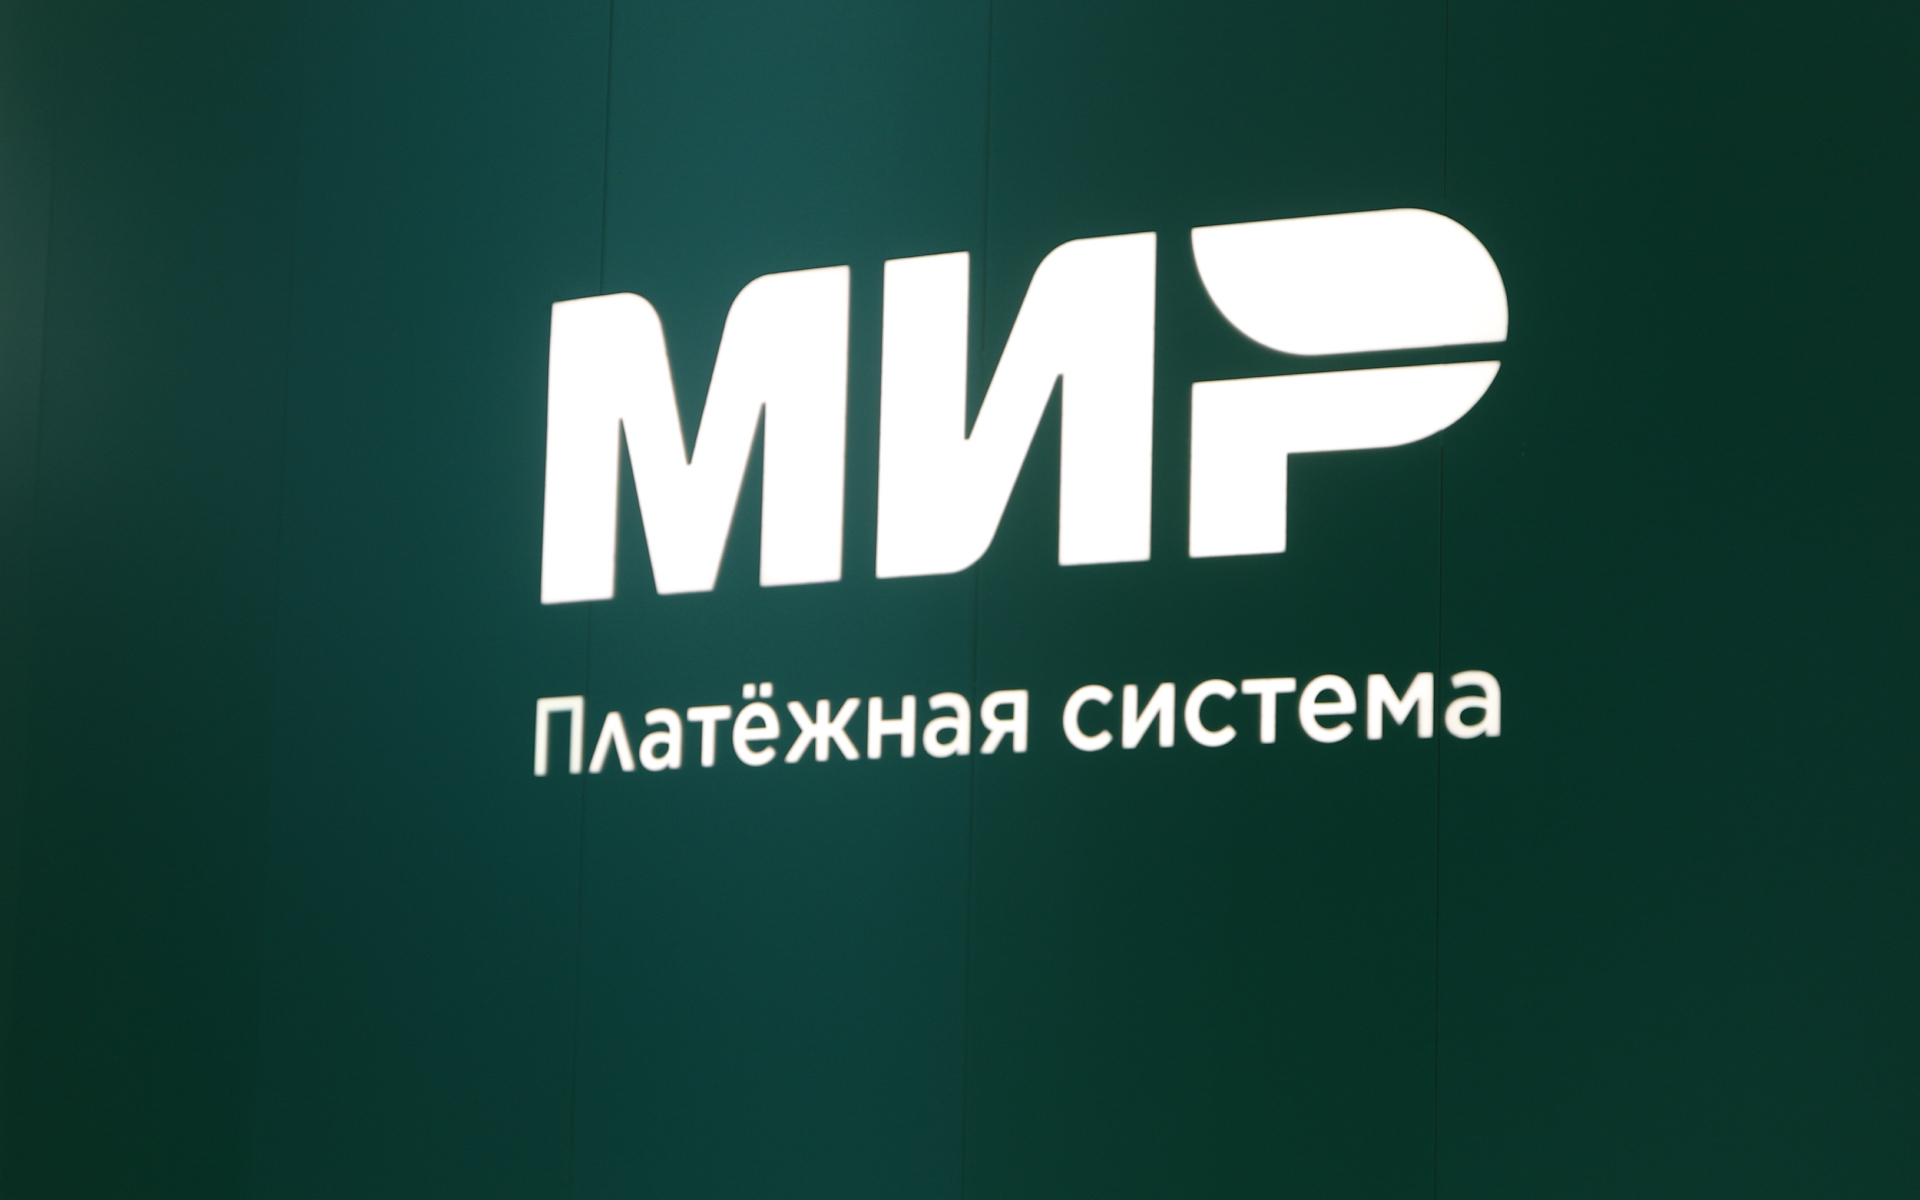 Российская премьер-лига обсудит добавление к своему названию слова «Мир»